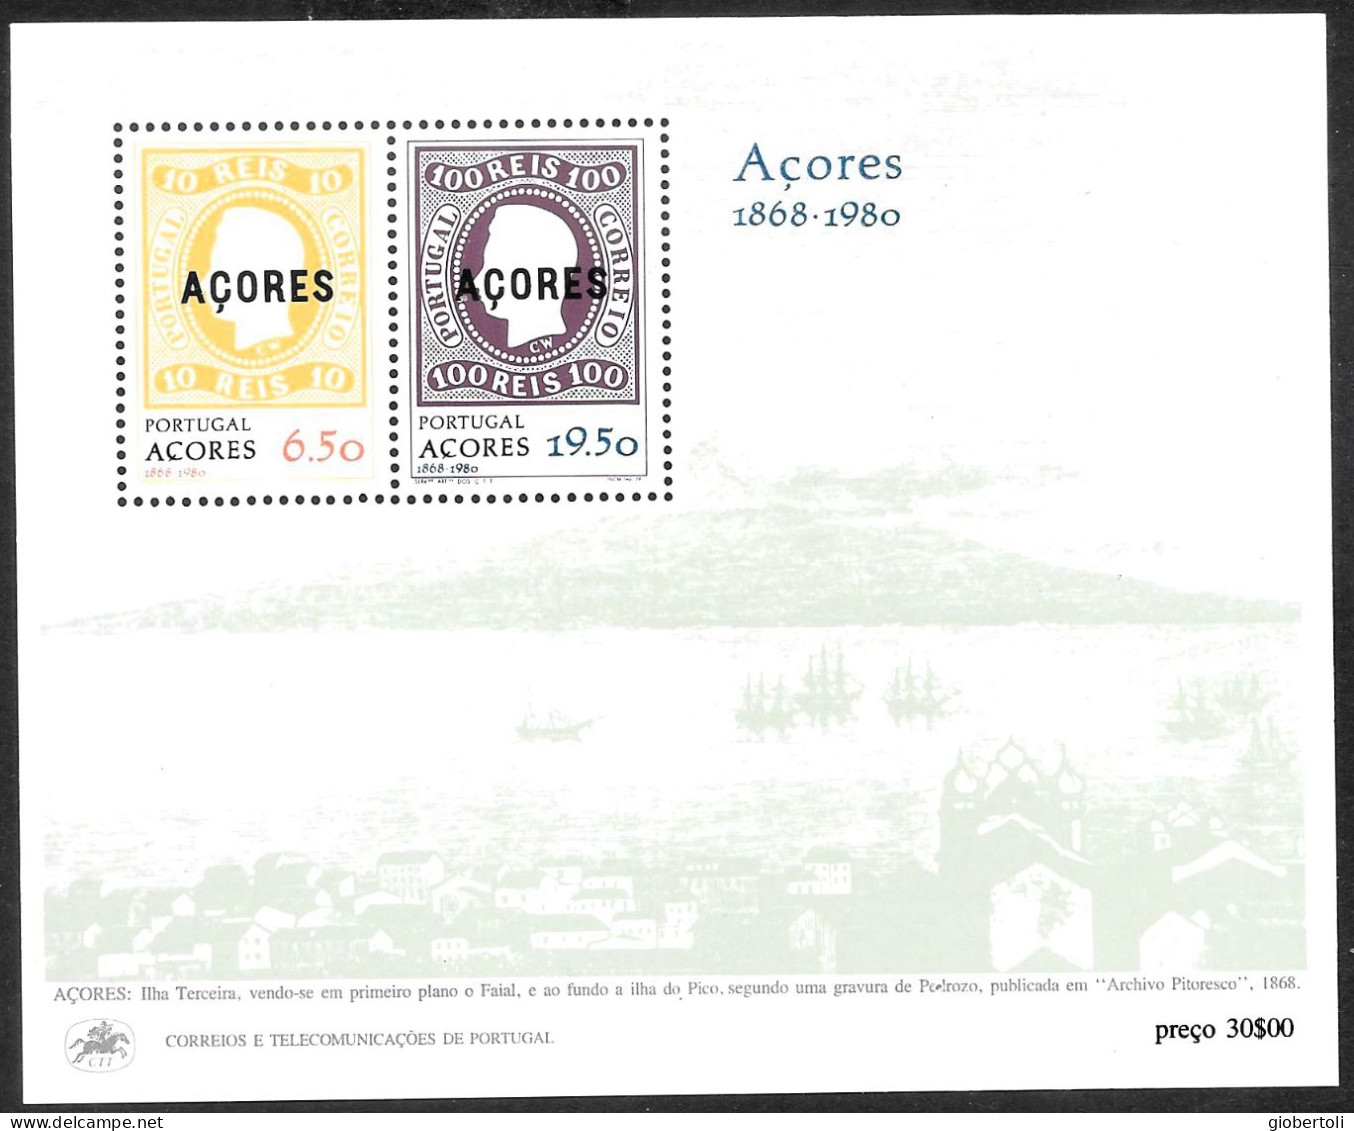 Portogallo/Portugal (Azzorre): Francobolli Su Francobolli, Stamps Upon Stamps, Timbres Sur Timbres - Francobolli Su Francobolli